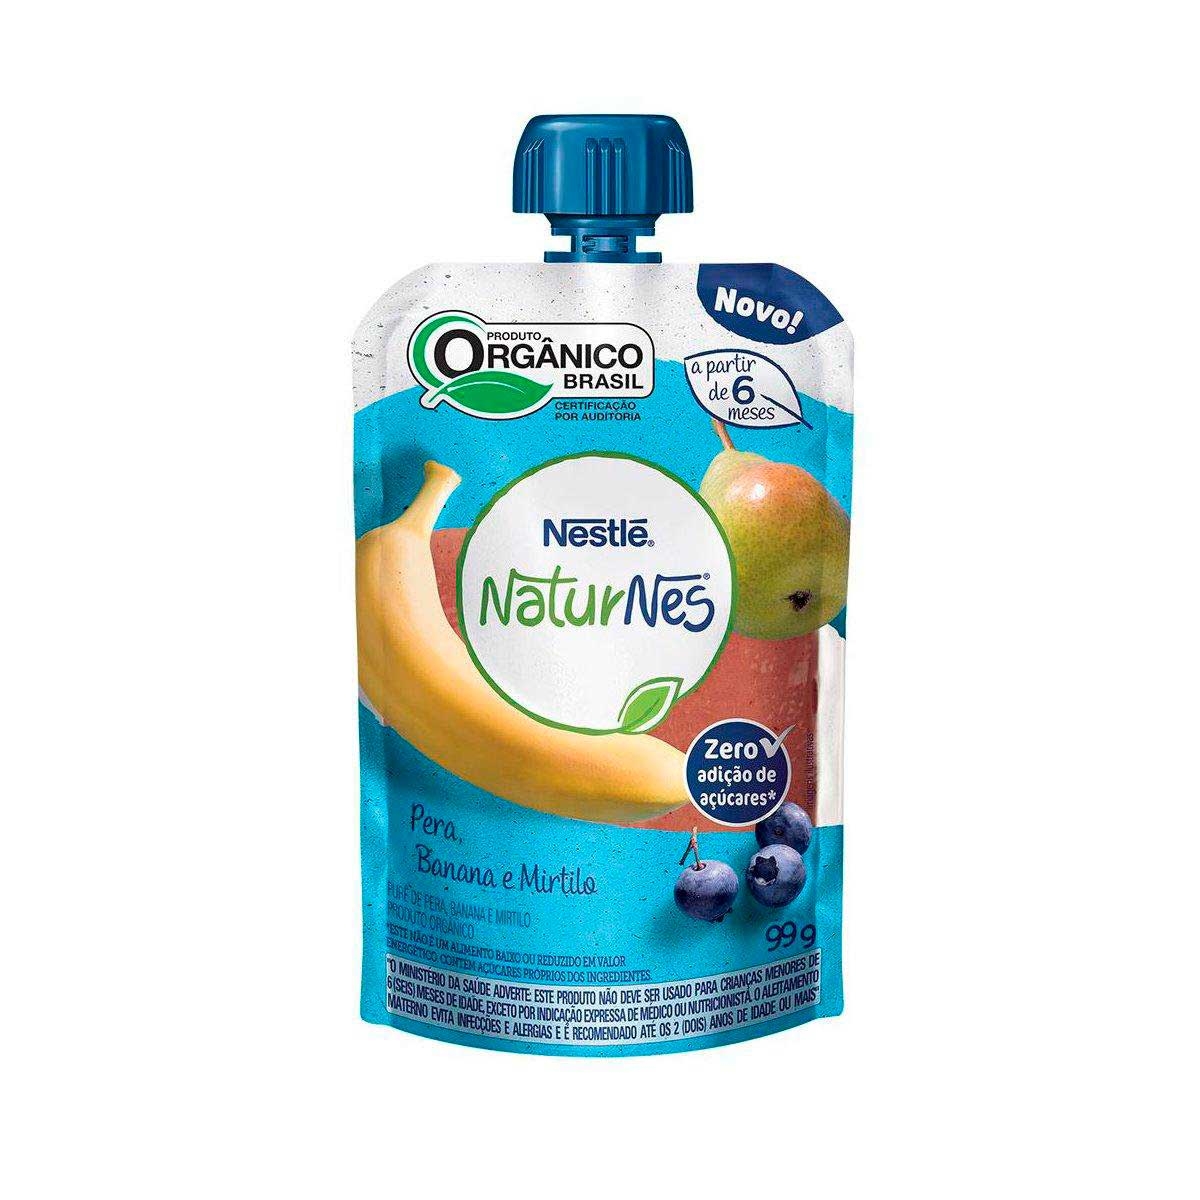 Purê Orgânico Nestlé Naturnes Pera, Banana e Blueberry com 99g 99g